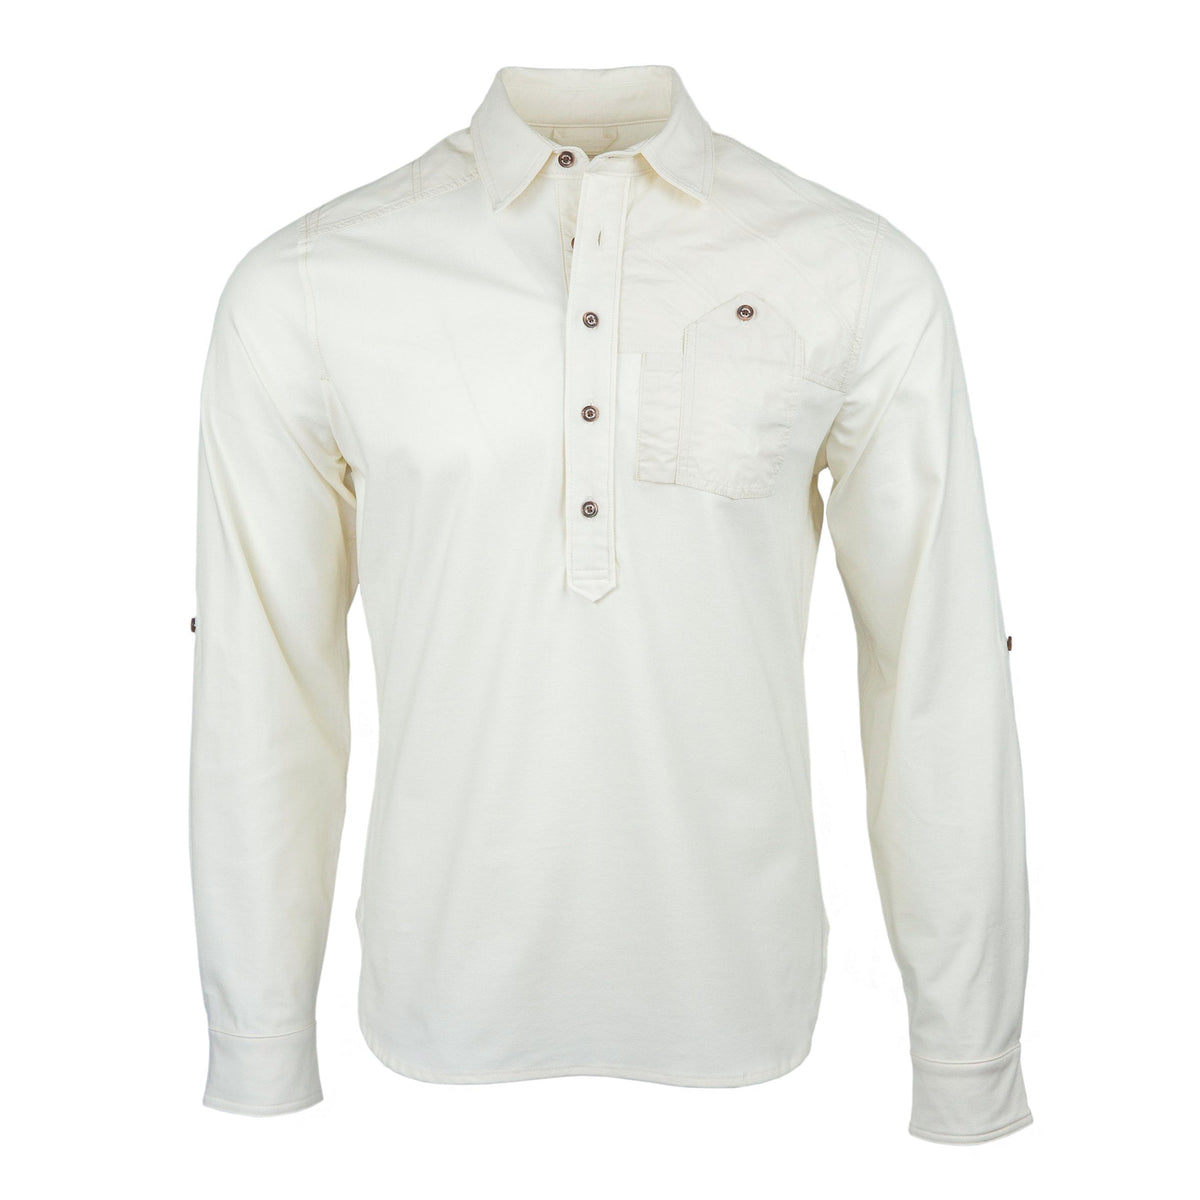 POOMEX White Shirt Full Sleeve (38) : : Clothing